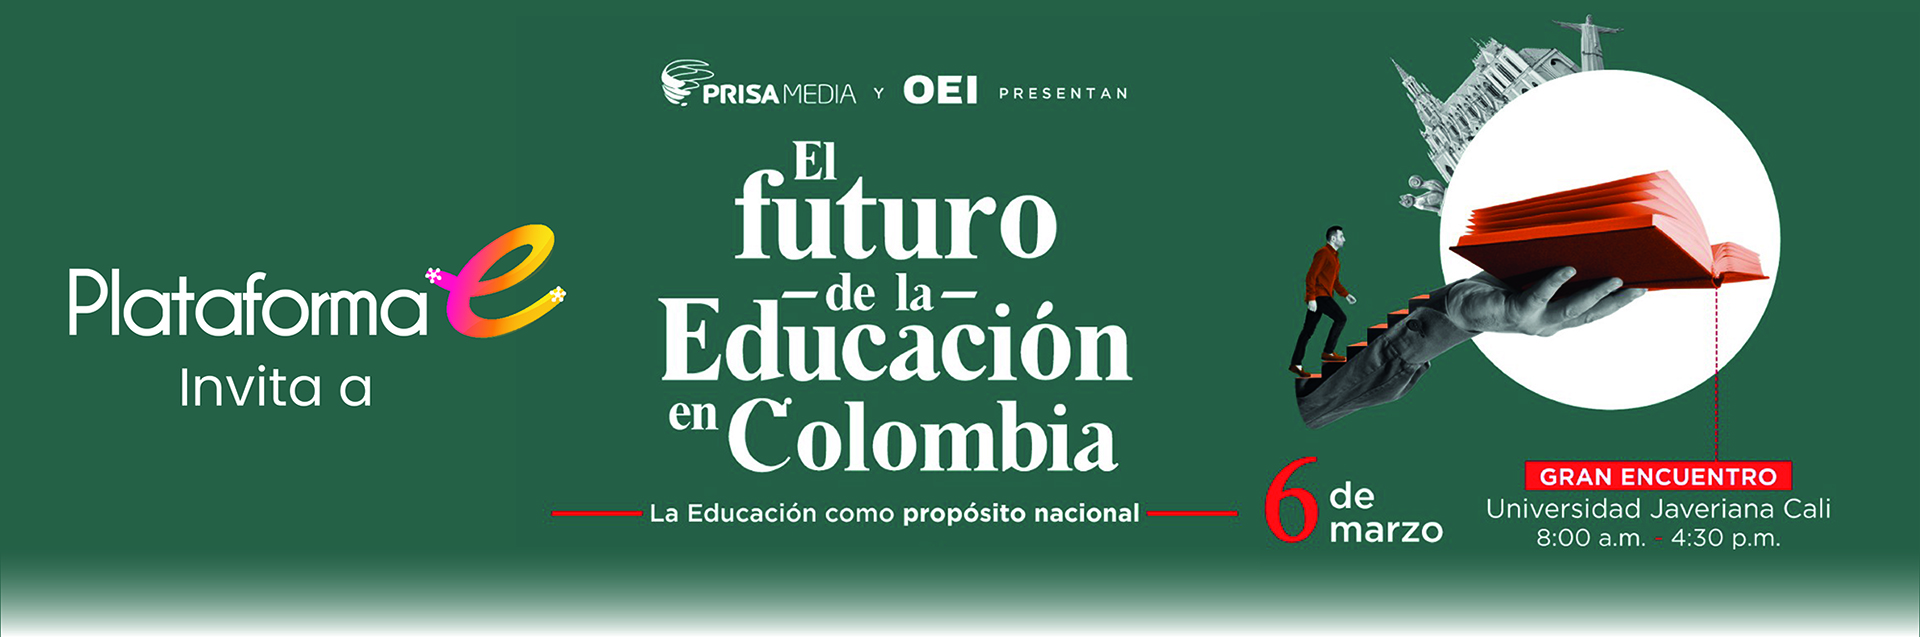 El futuro de la educación en Colombia